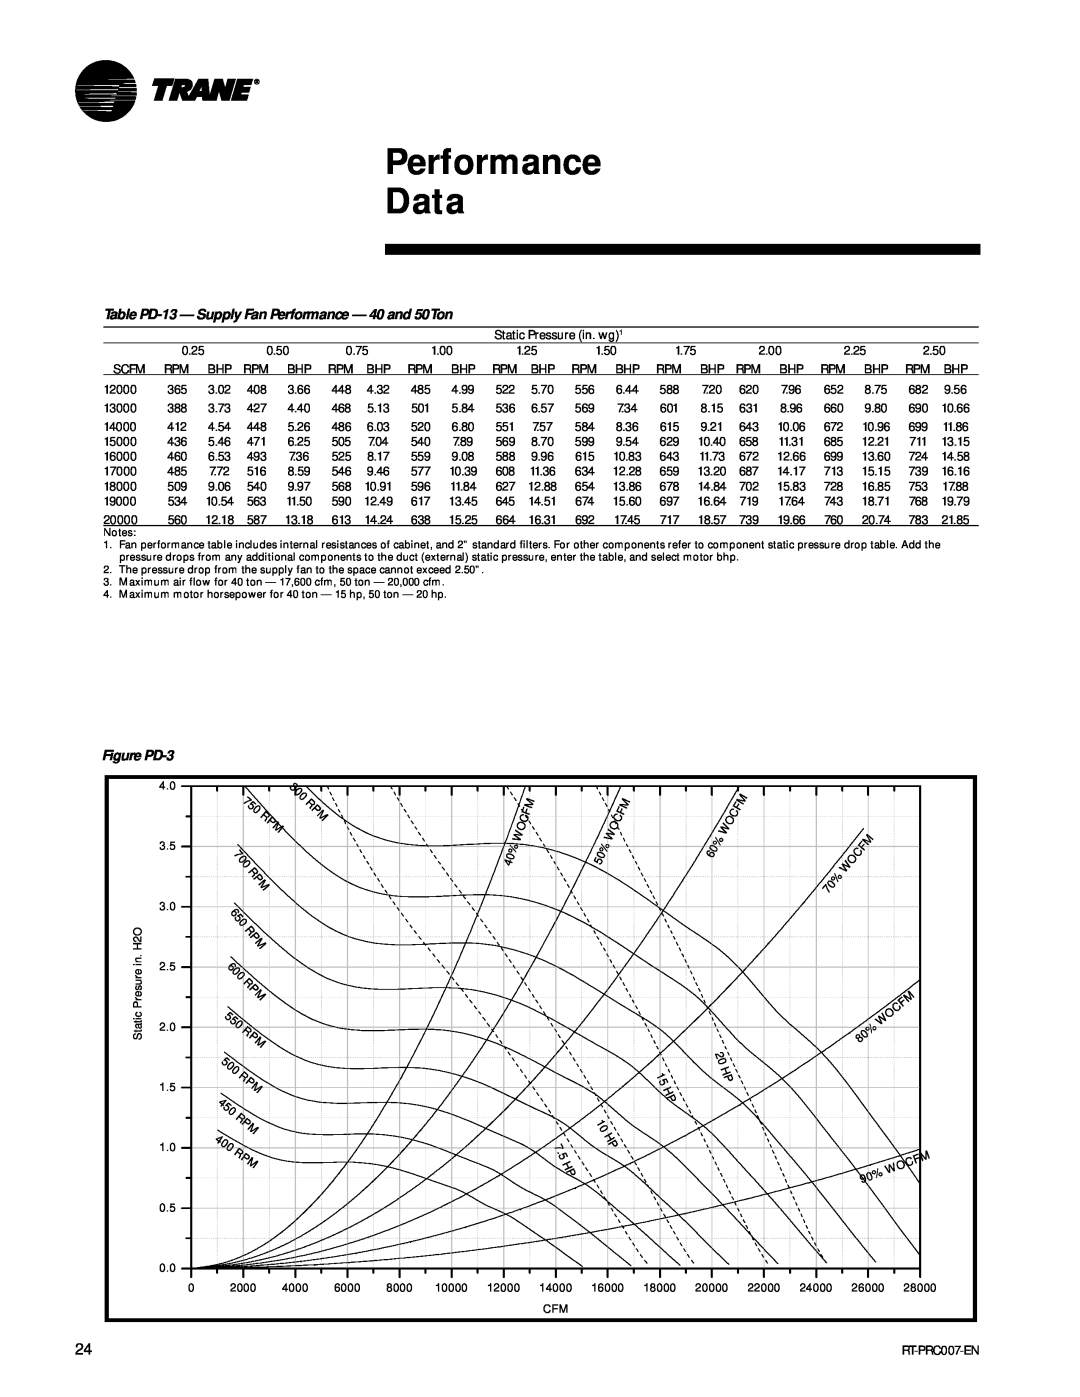 Trane RT-PRC007-EN manual Performance Data 